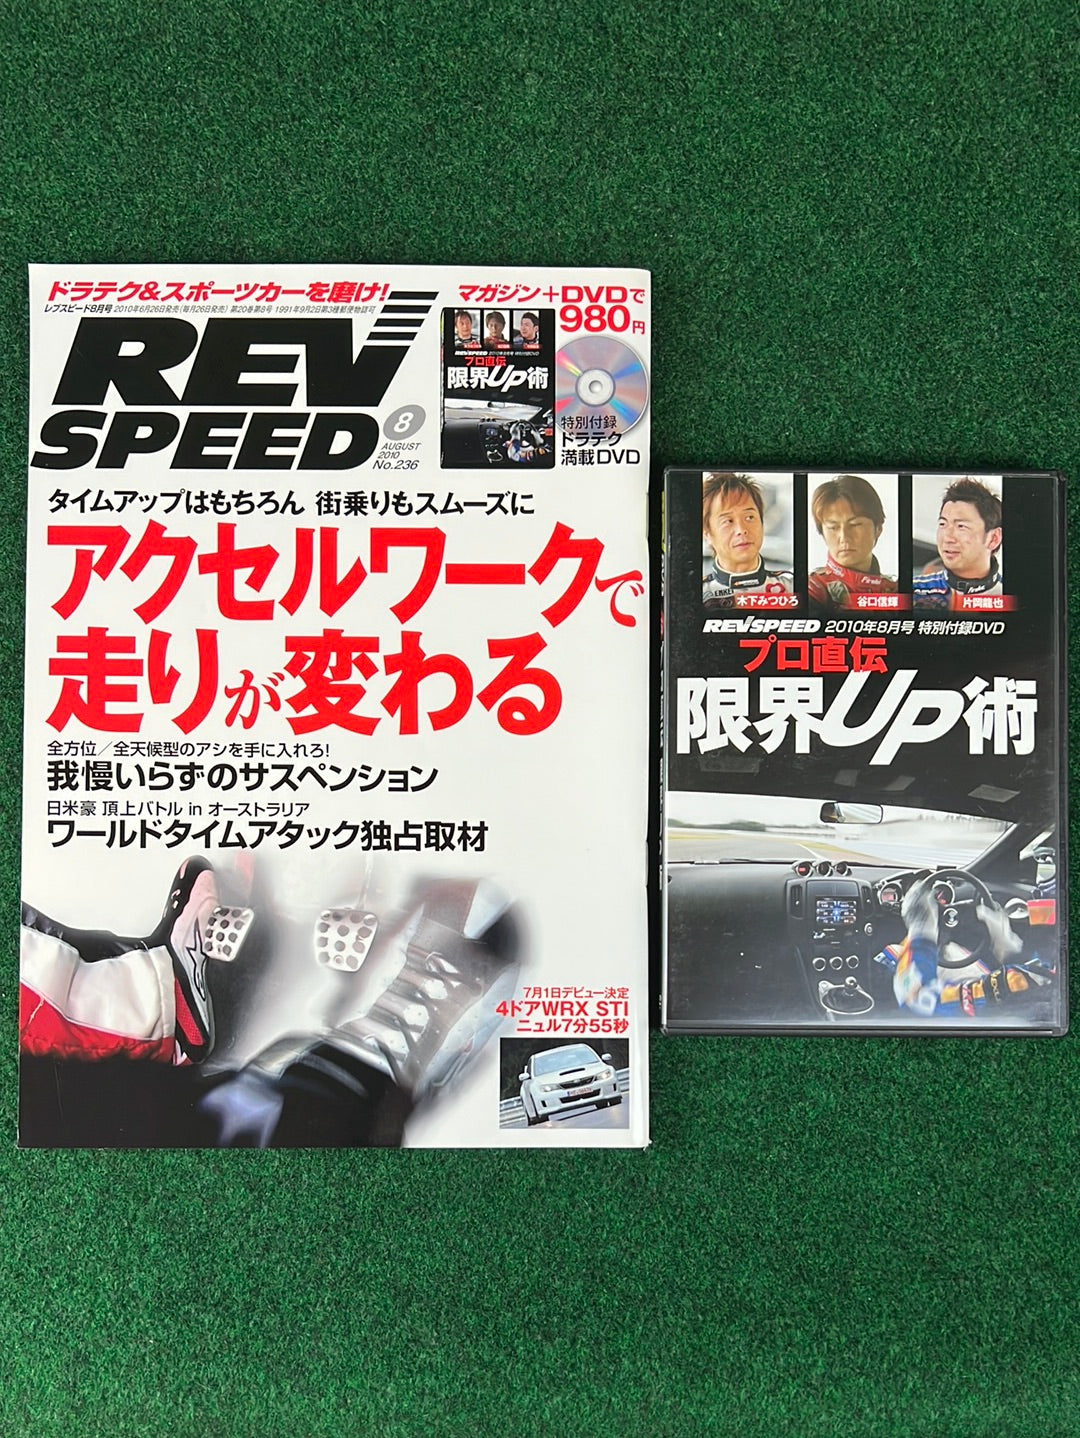 REVSPEED レブスピード 付録DVD 4枚☆ドラテク - スポーツ・フィットネス